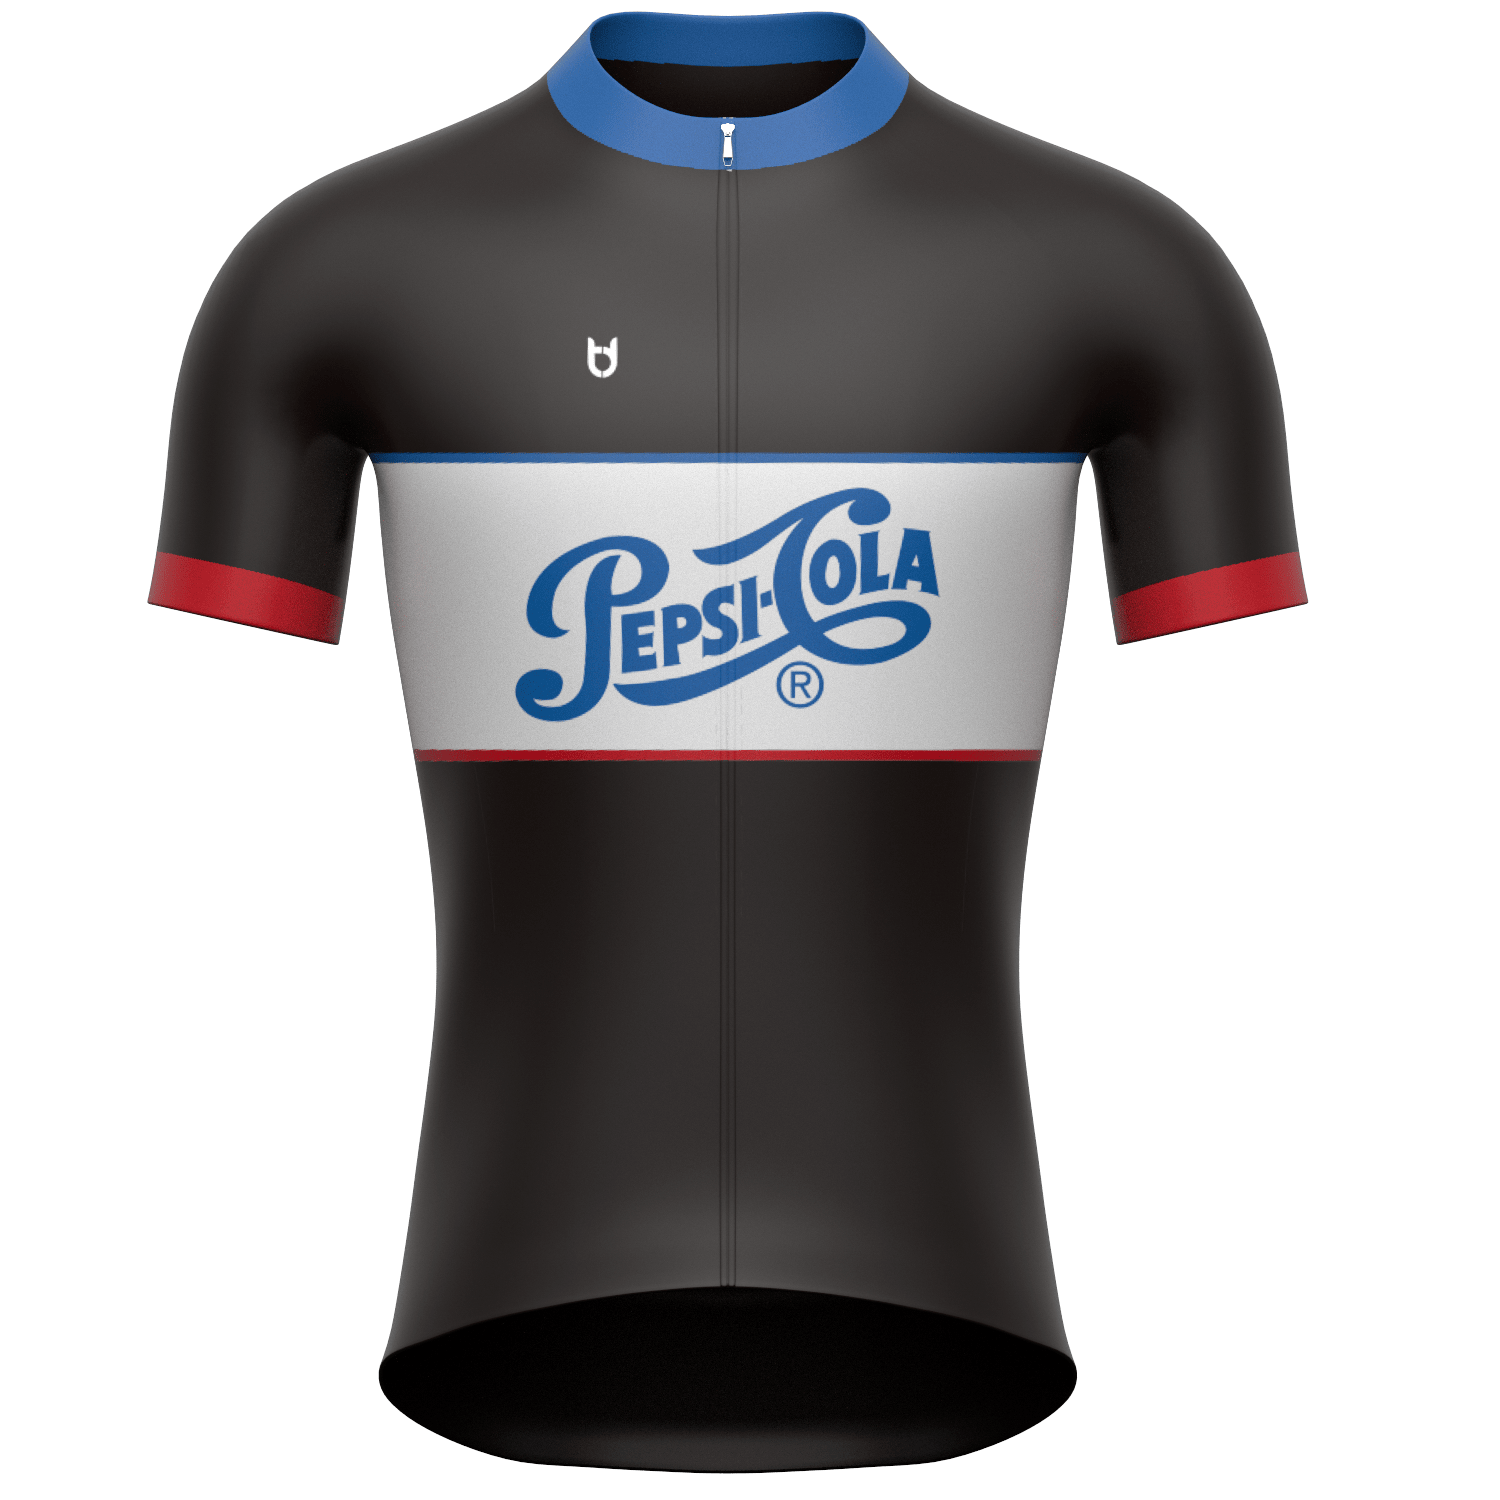 Pepsico custom sportswear cycling running traithlon